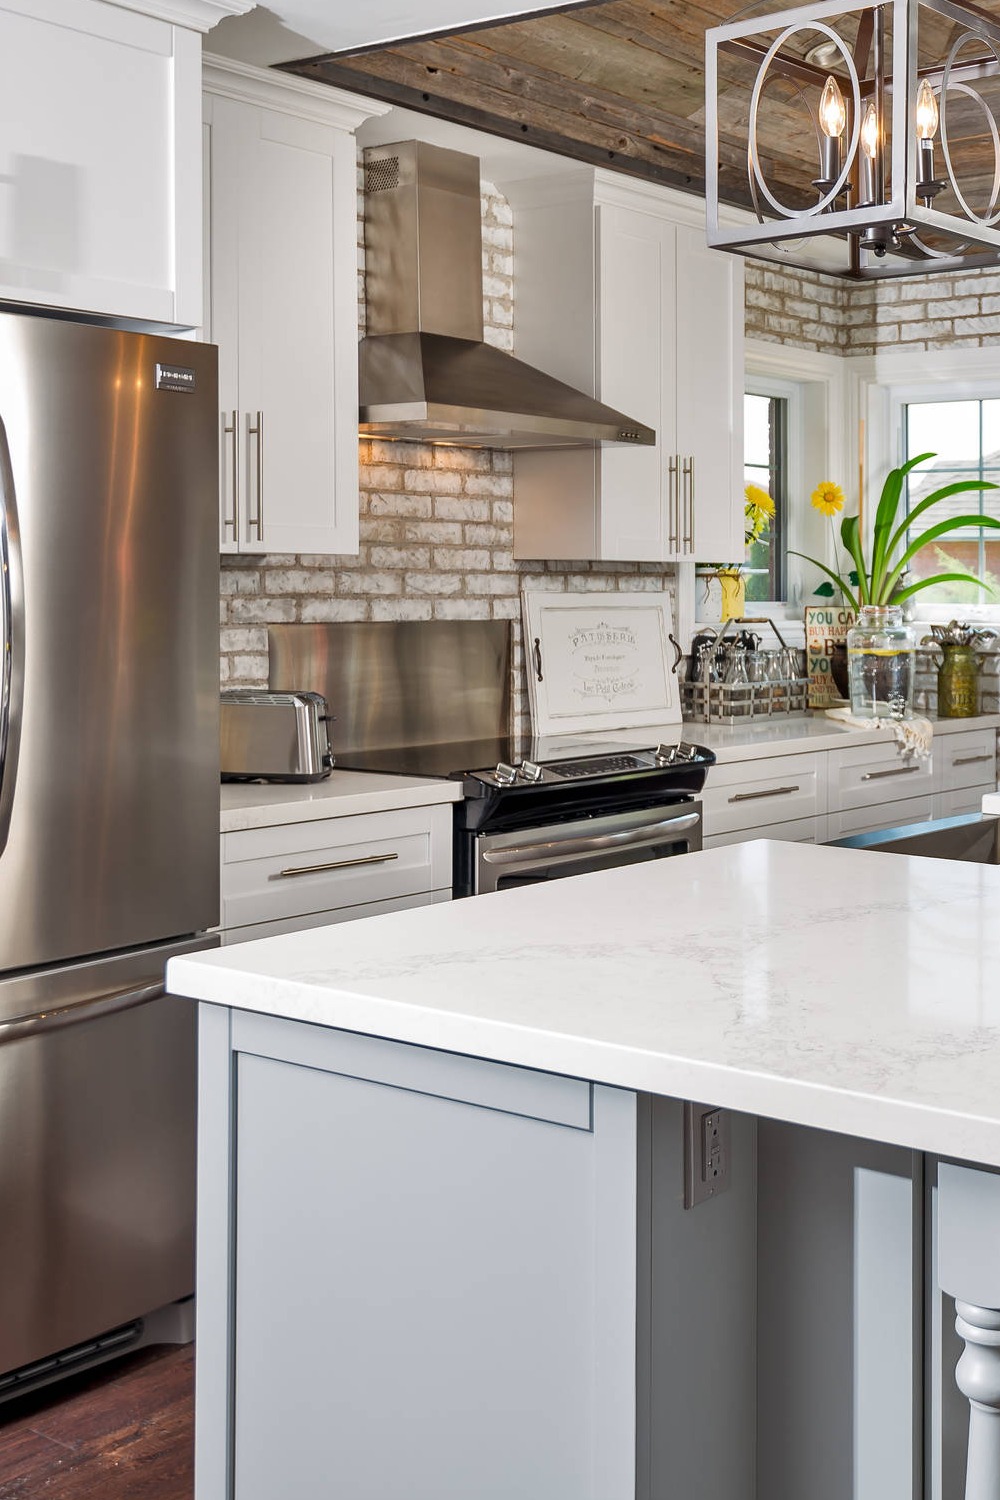 Stainless Steel Appliances White Backsplash Kitchen Design